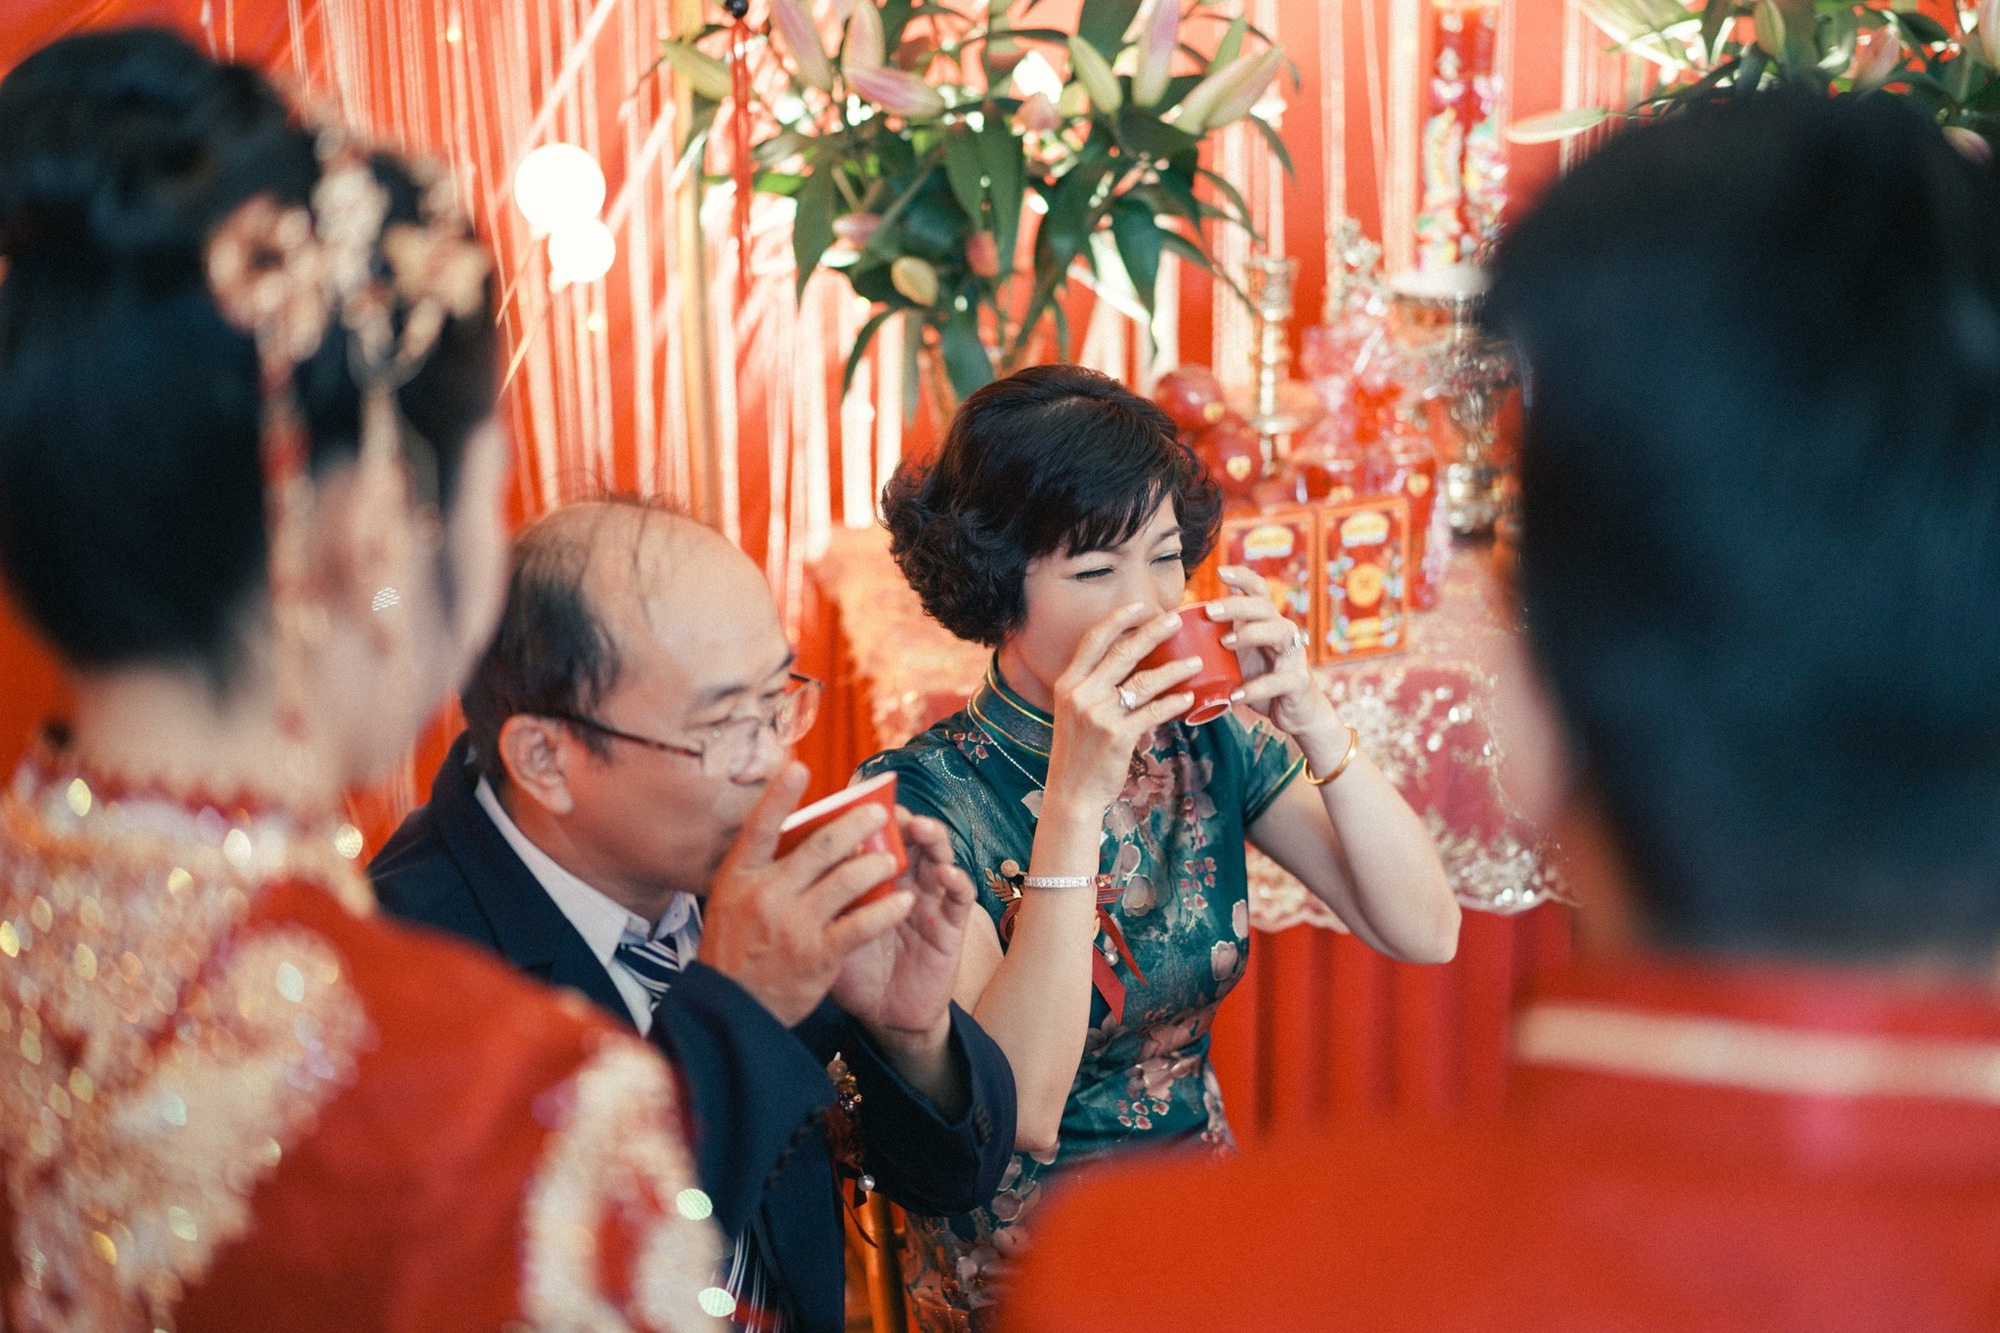 Đám cưới người Hoa với tổng chi phí 300 triệu tại An Giang: Tỉ mỉ từ cách chọn hoa cưới đến trang phục cô dâu - Ảnh 8.